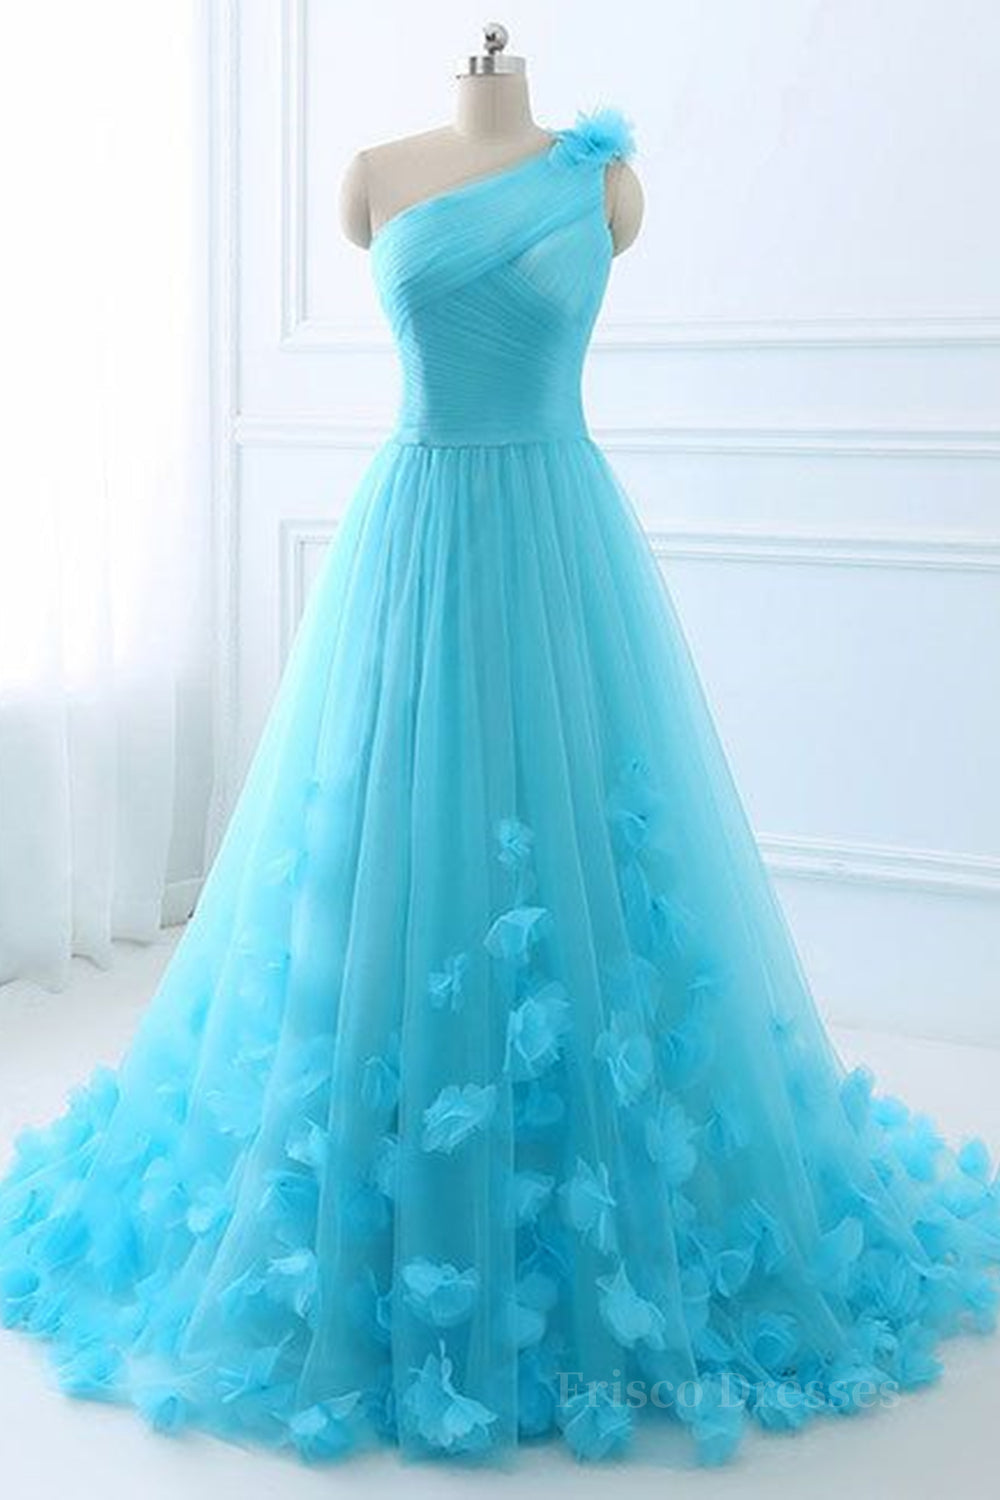 One Shoulder Blue 3D Flowers Long Prom Dress, Blue Floral Formal Evening Dress